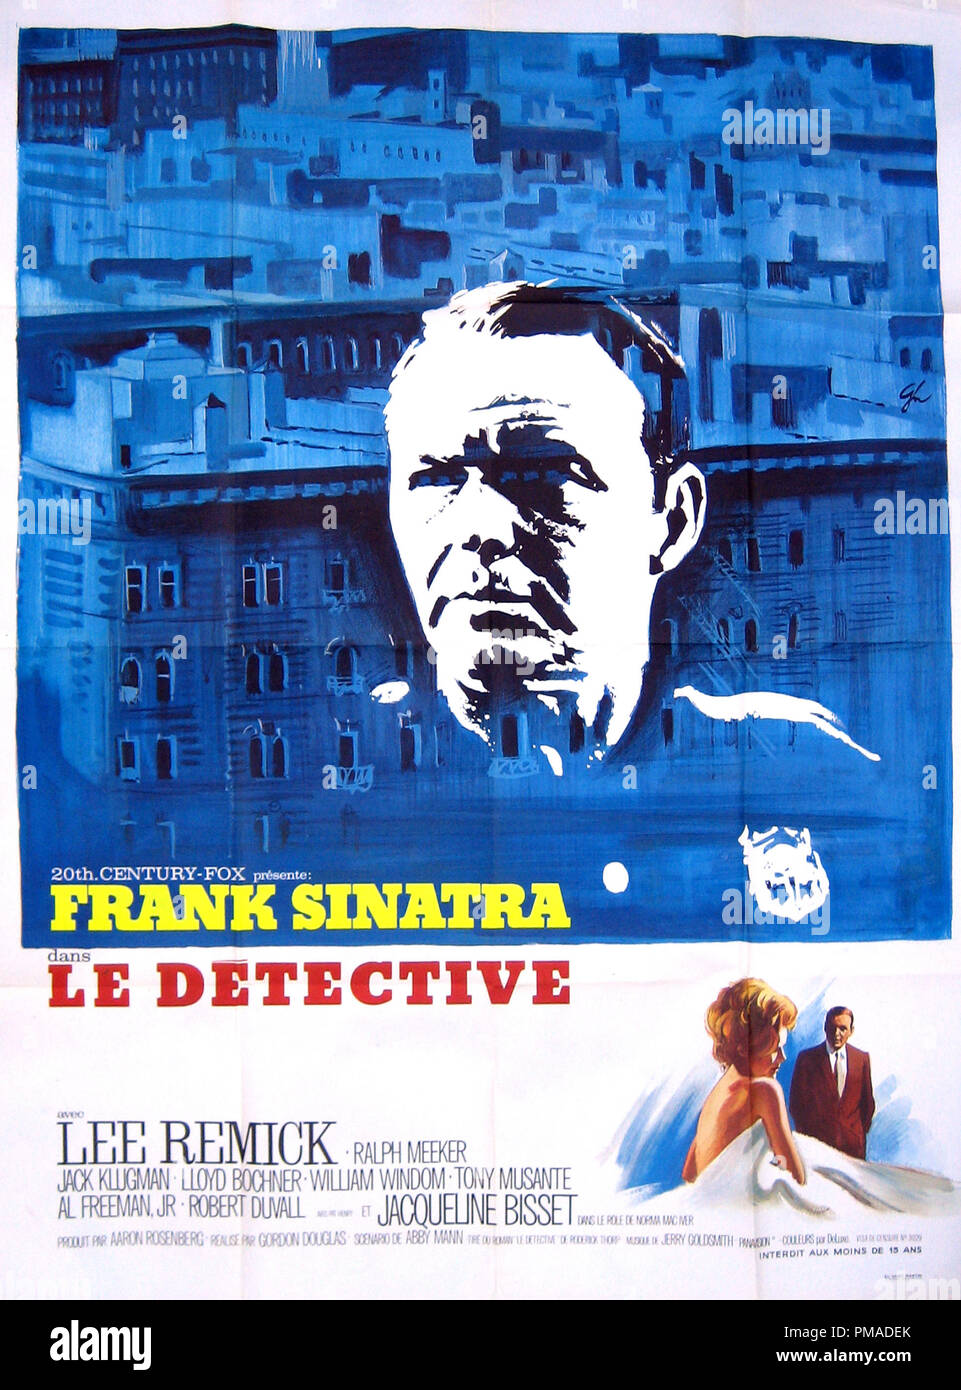 Der Detektiv" - Französische Plakat 1968 Twentieth Century Fox Frank  Sinatra Datei Referenz # 32509 115 THA Stockfotografie - Alamy